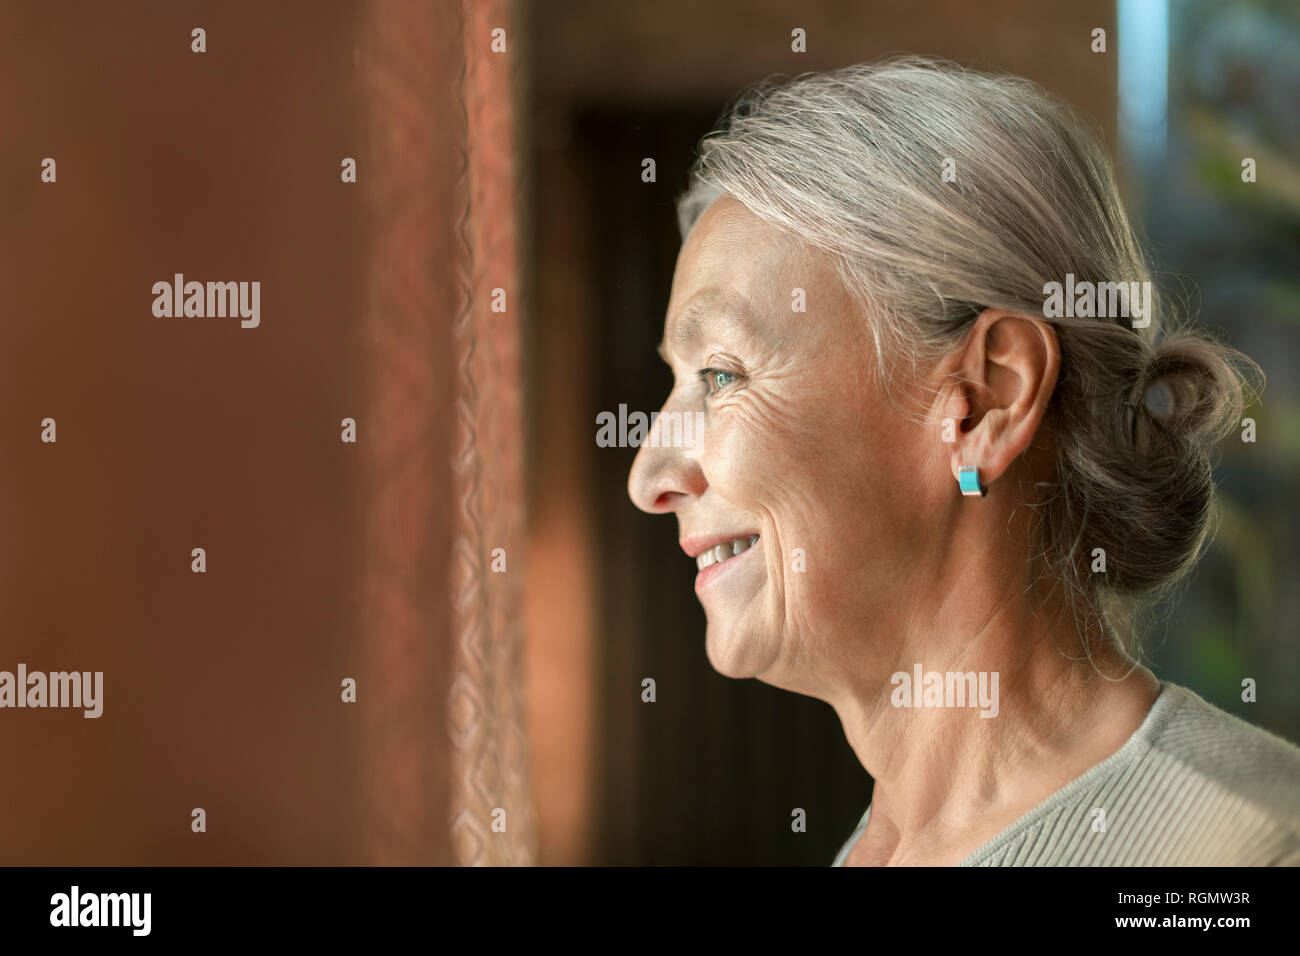 Profile of smiling senior woman Stock Photo